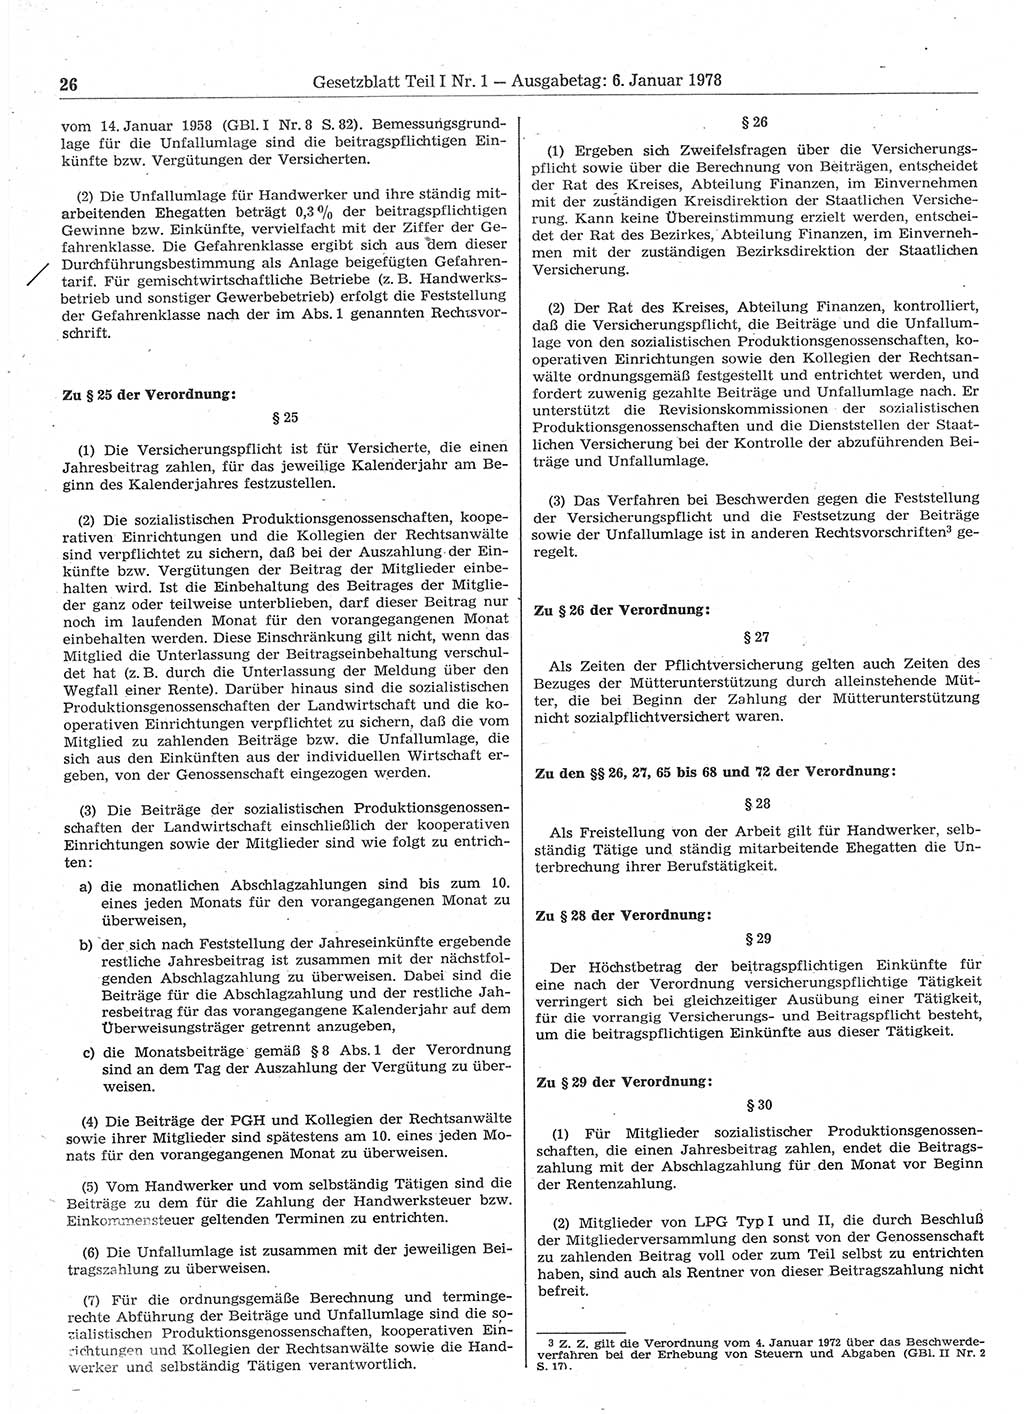 Gesetzblatt (GBl.) der Deutschen Demokratischen Republik (DDR) Teil Ⅰ 1978, Seite 26 (GBl. DDR Ⅰ 1978, S. 26)